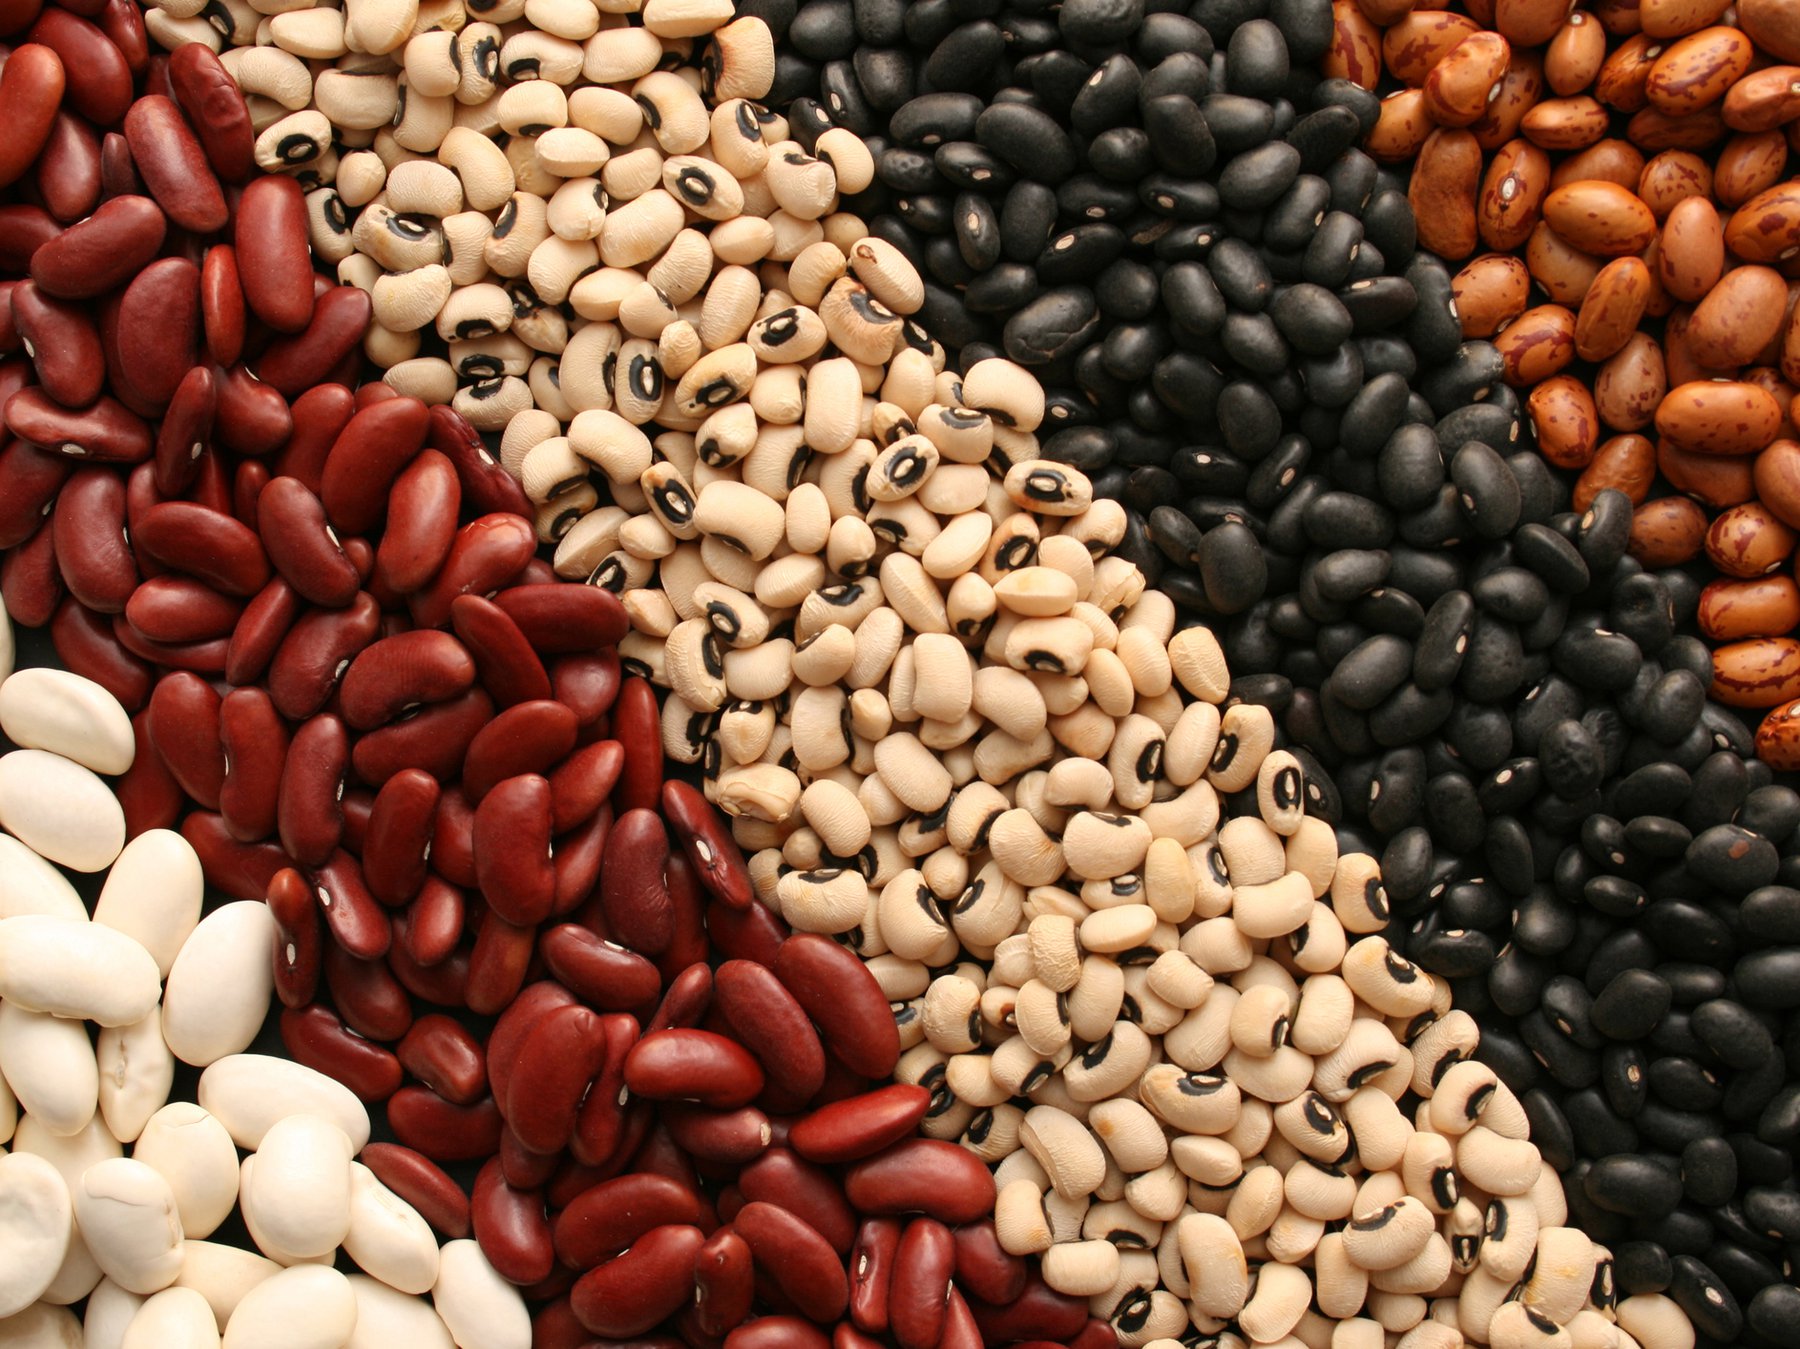     Một số loại hạt có hàm lượng protein cao.  (Ảnh: Sưu tầm Internet)